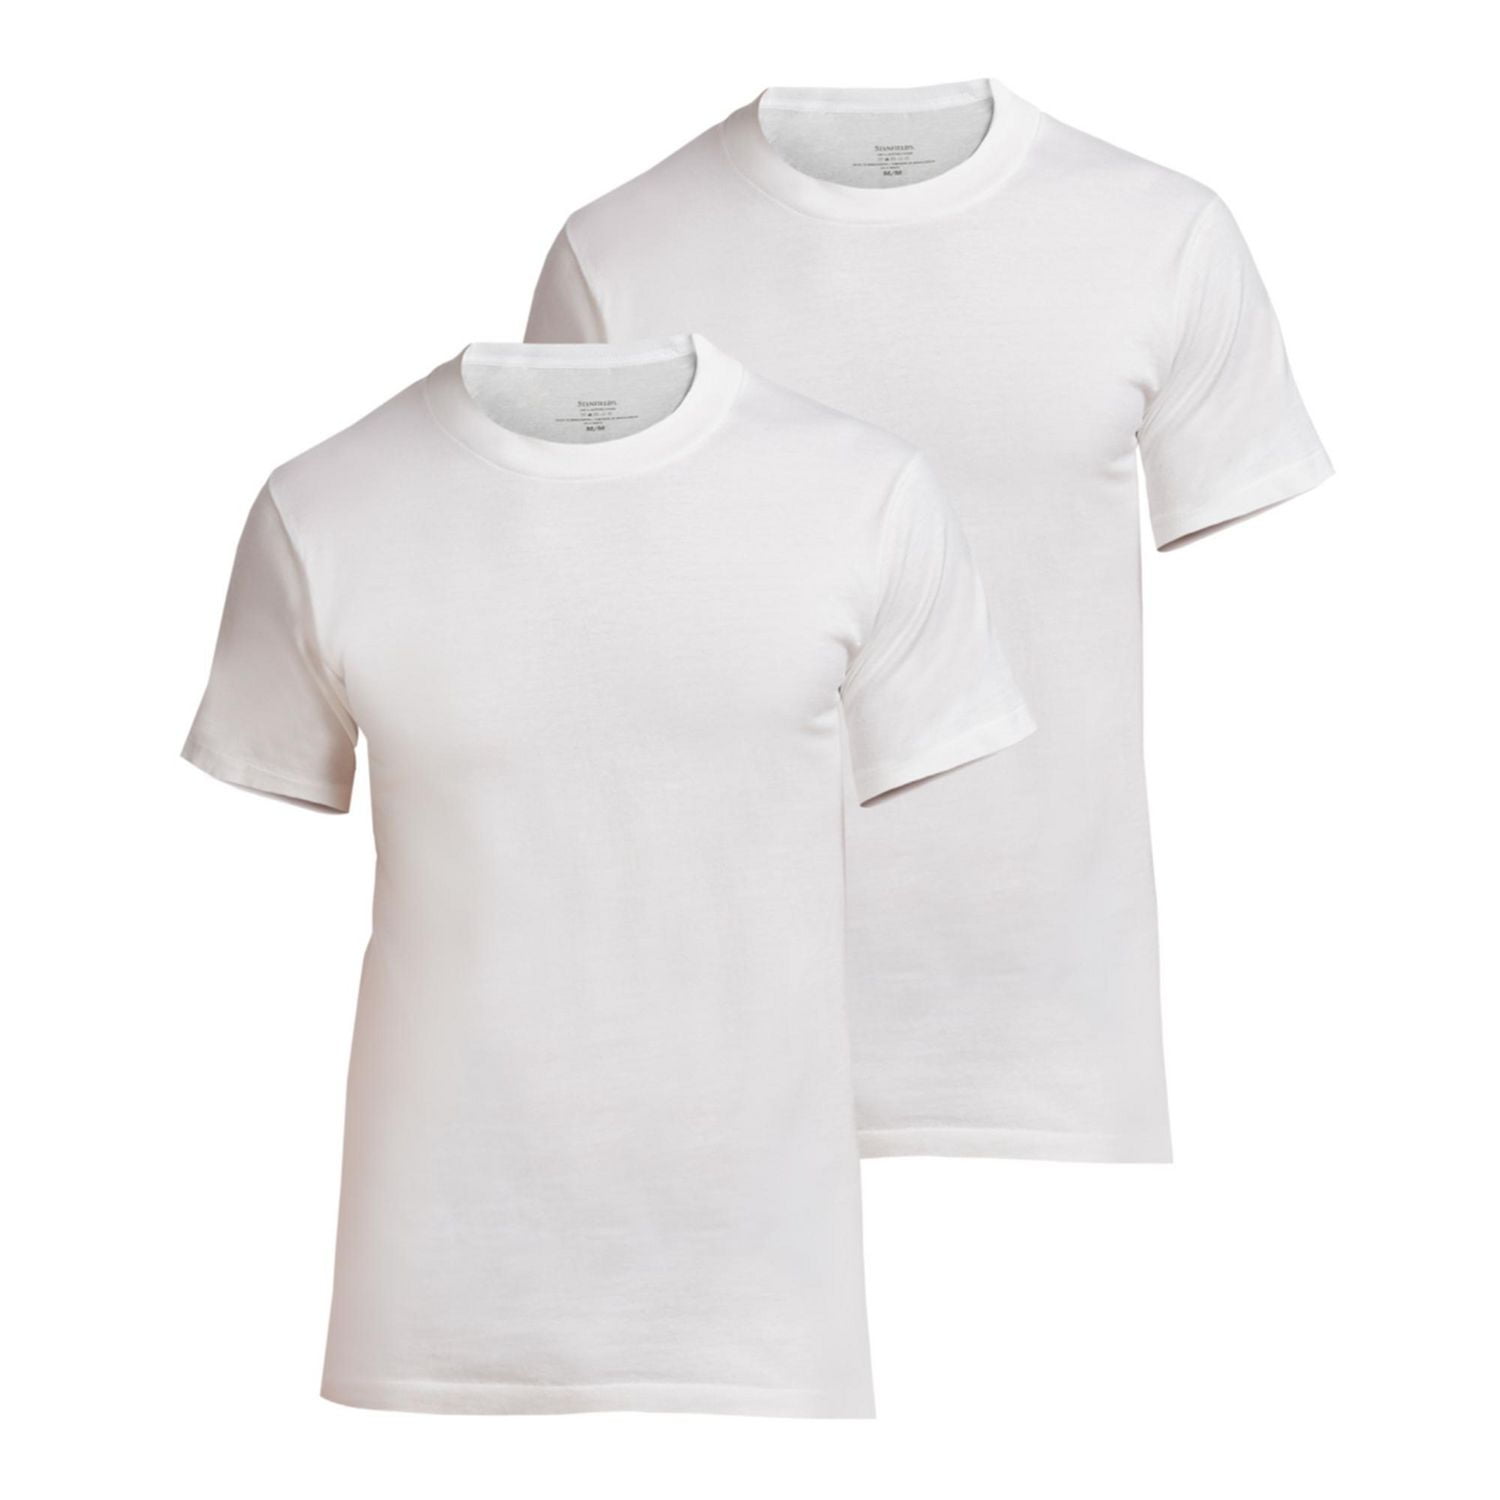 Stanfield's Men's Premium 100% Cotton Crewneck T-Shirt - 2 Pack 